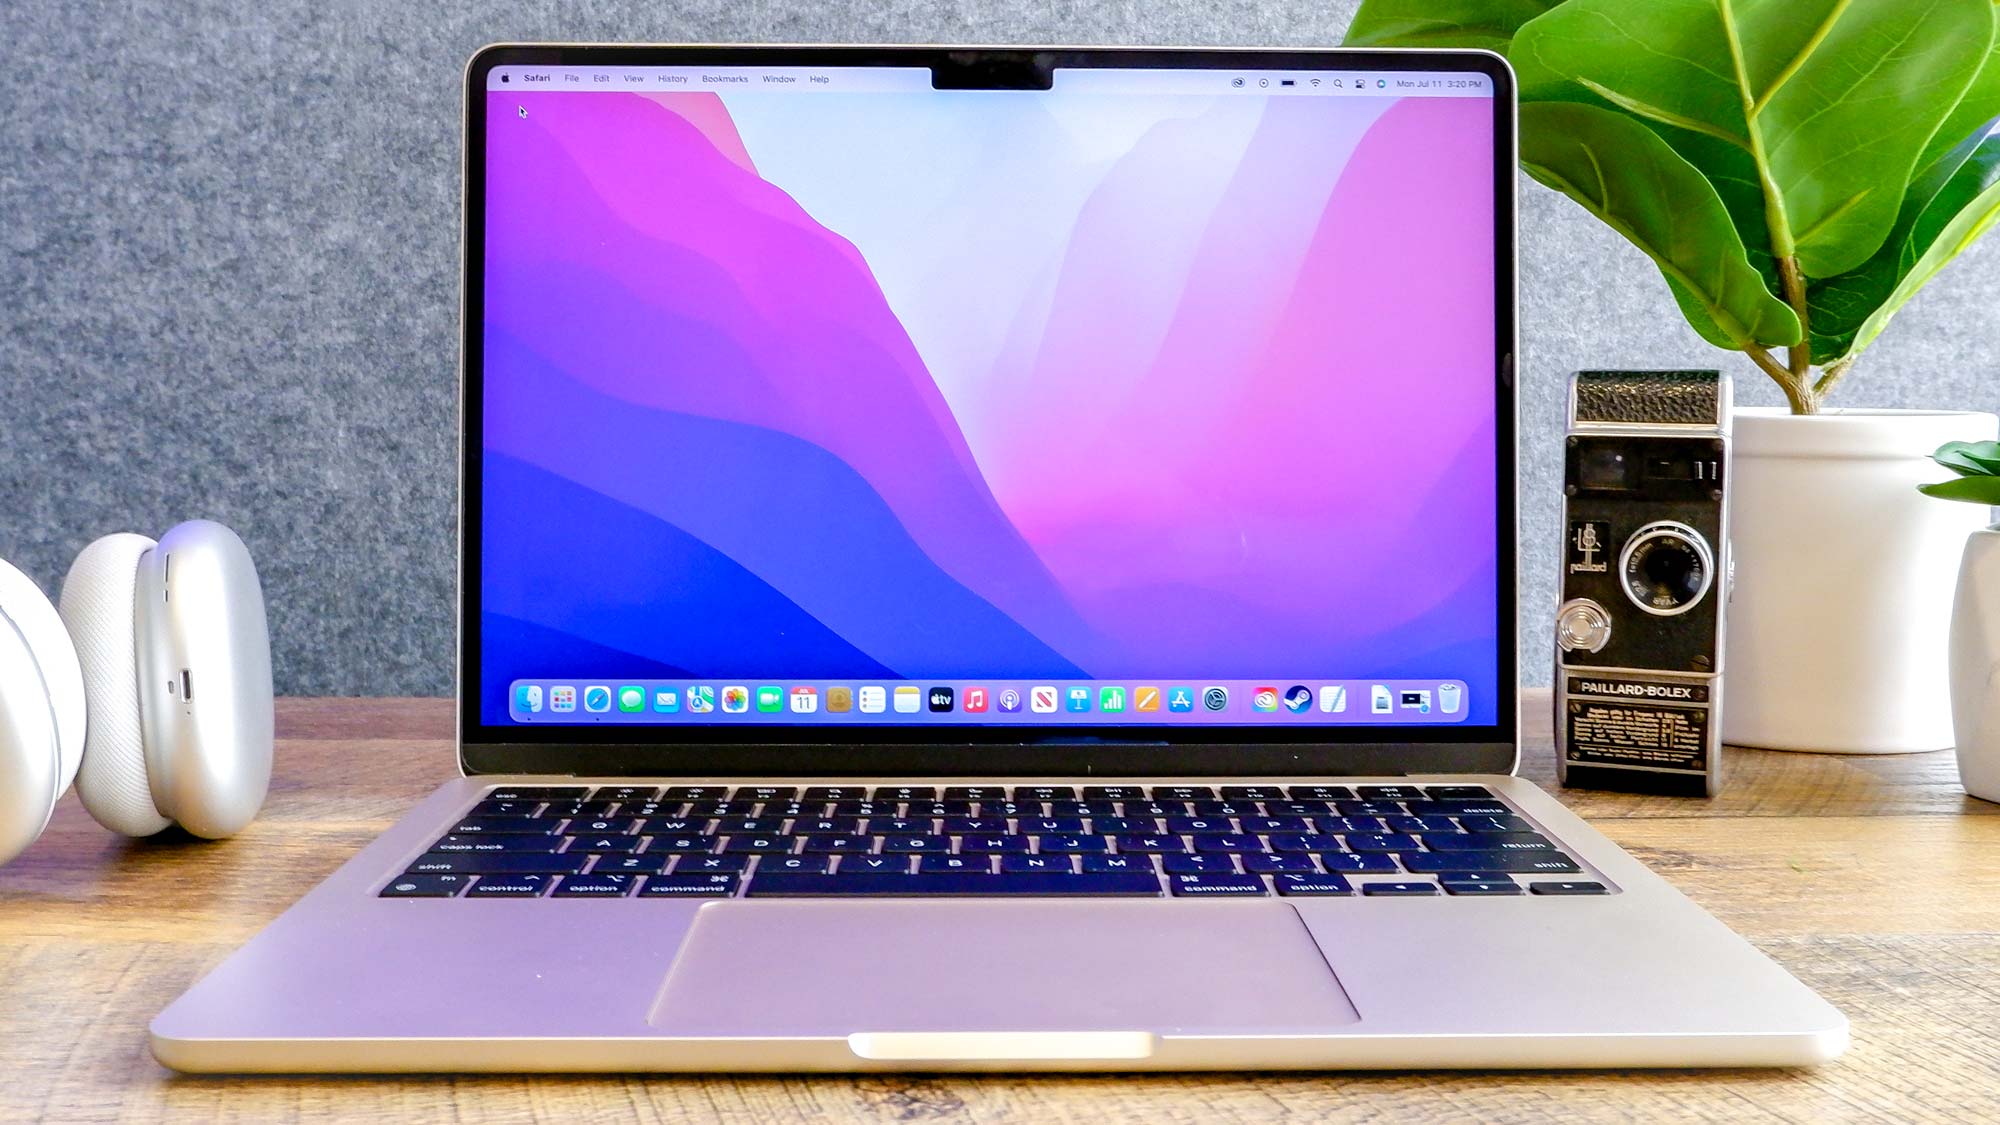 MacBook Air comment acheter moins cher en Israël sur le babillard